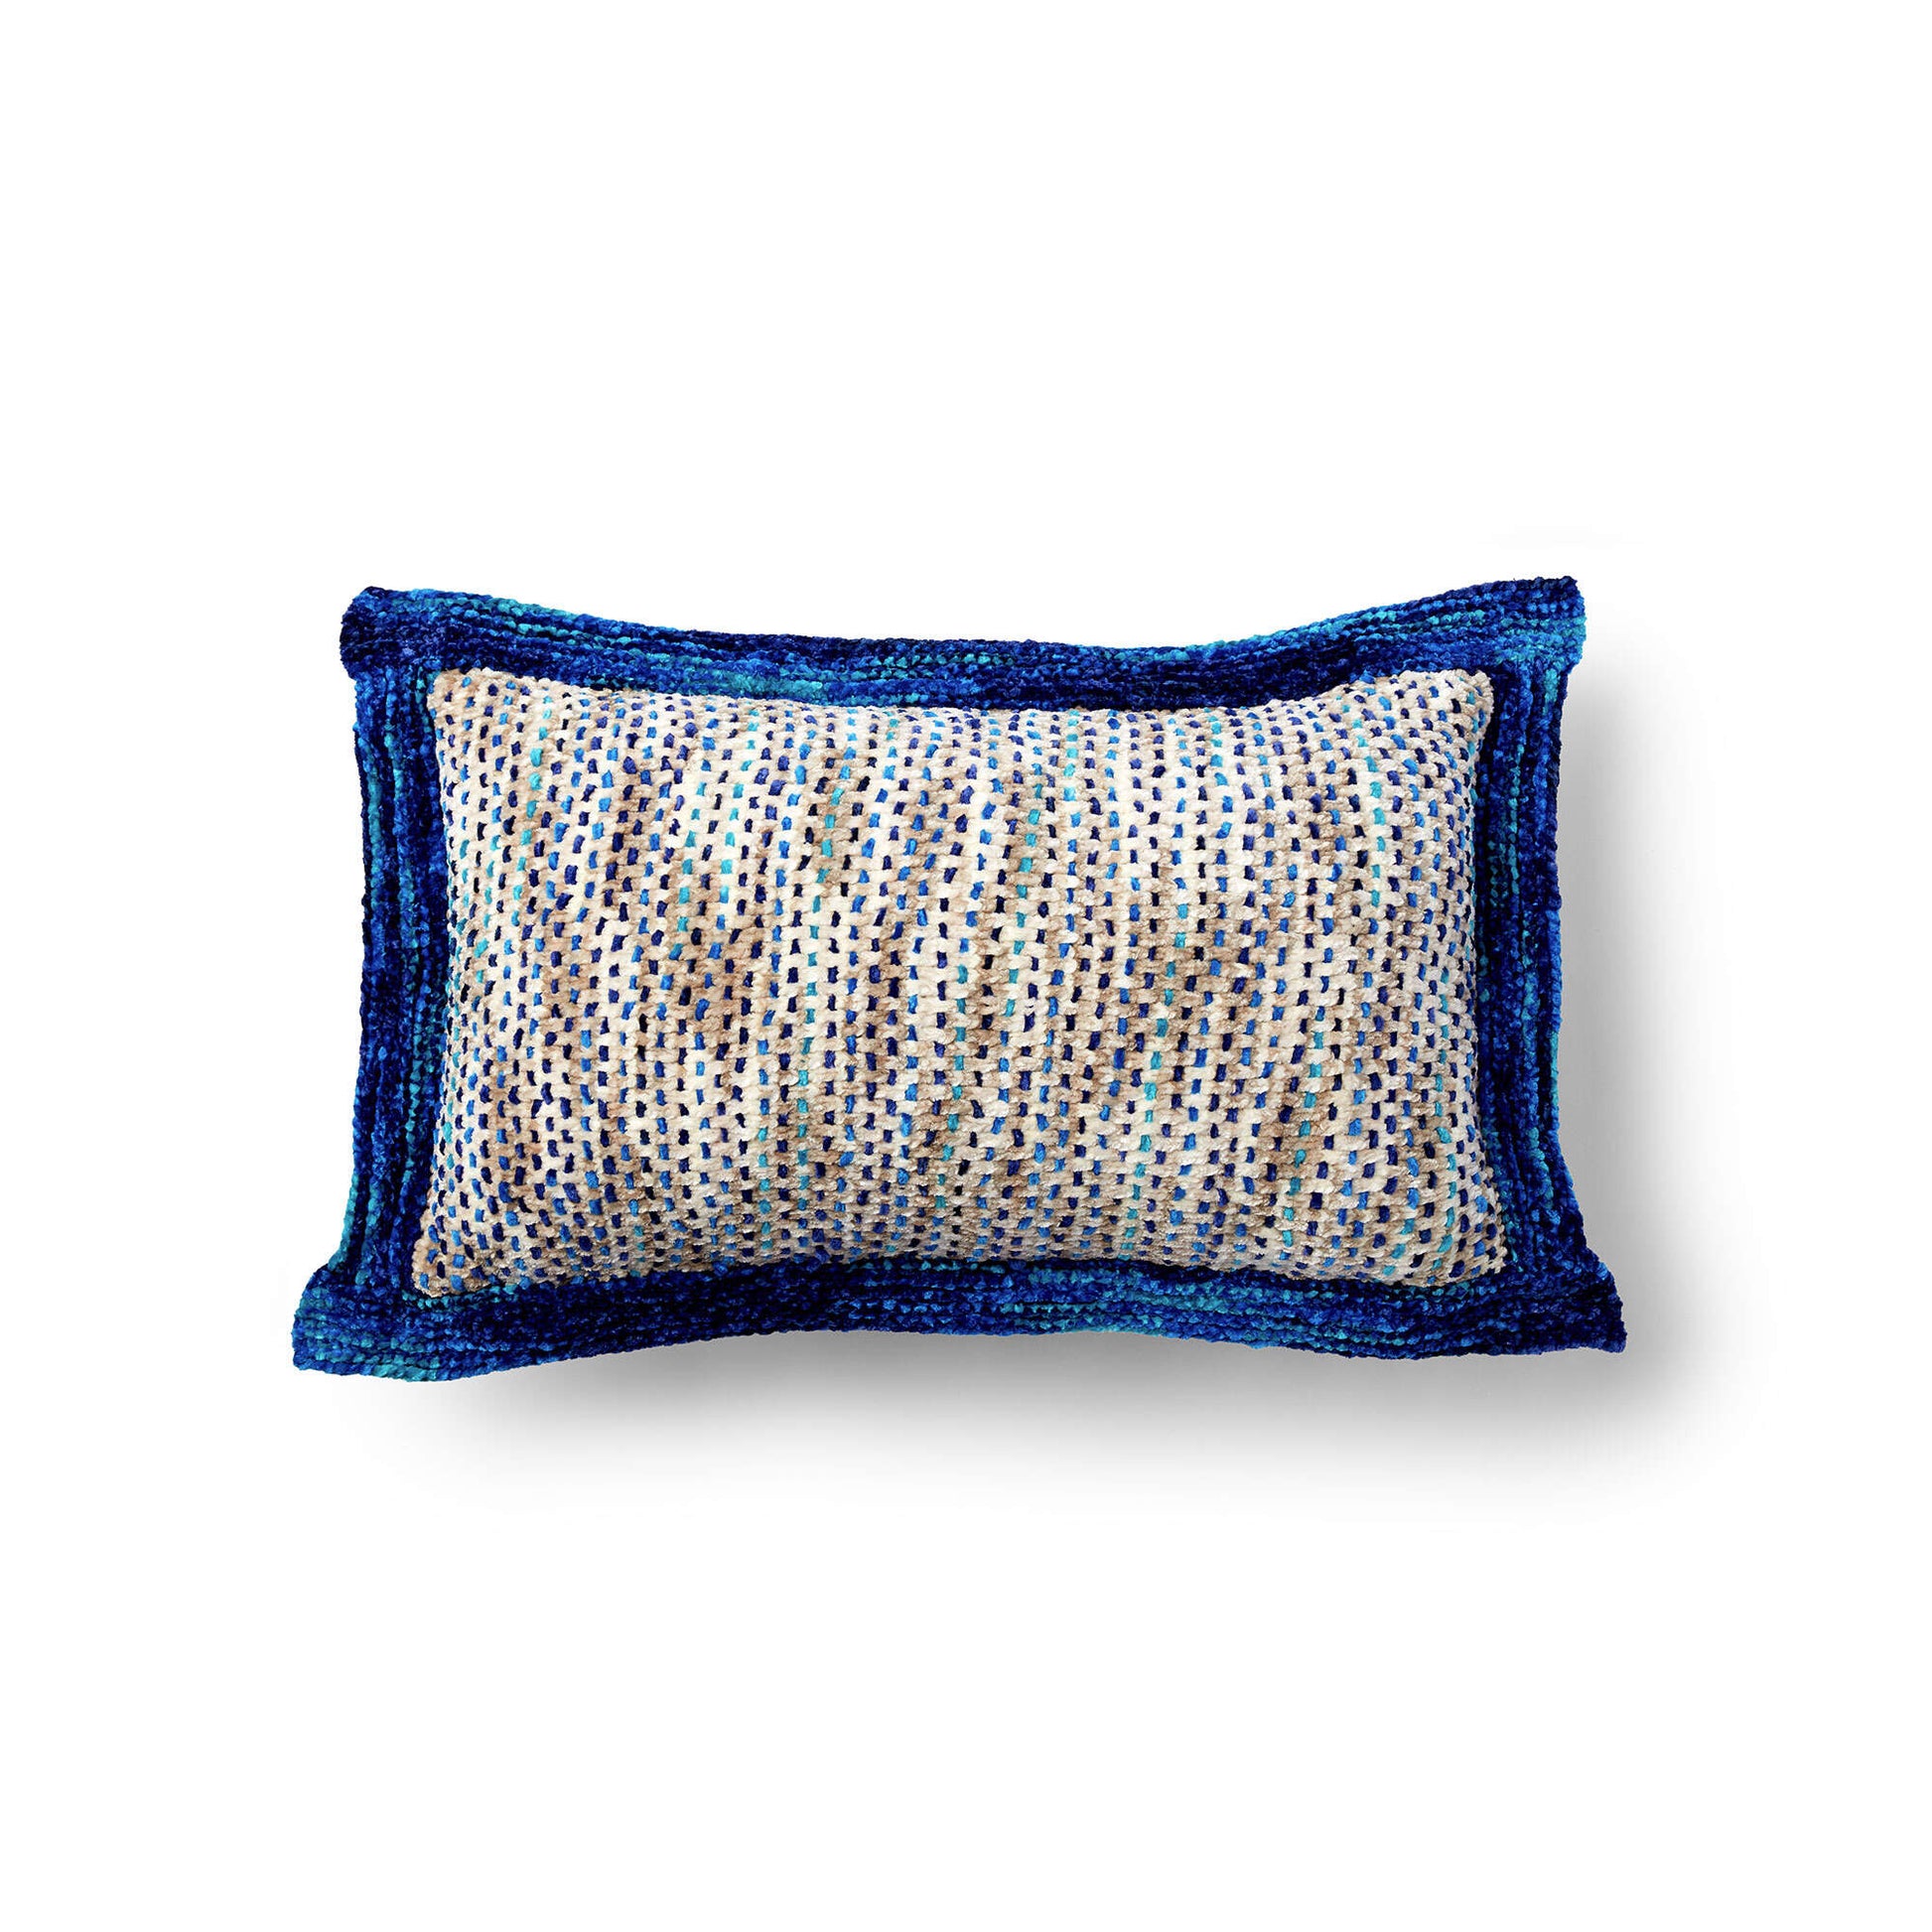 Free Bernat Knit And Weave Cushion Pattern